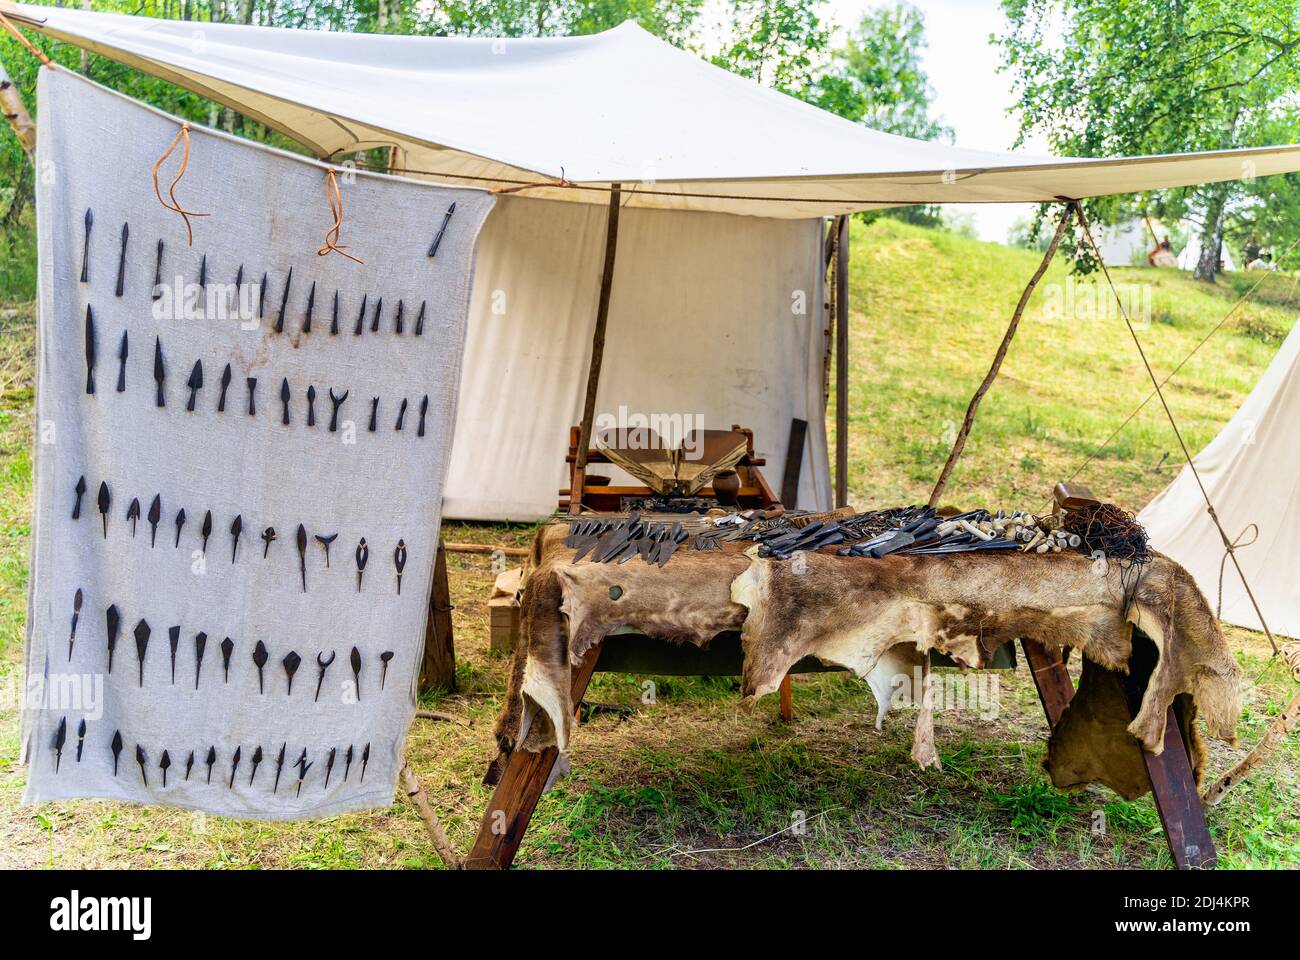 Bowyer, atelier de maître-artisan avec variété de pointes de flèches et d'outils dans la reconstitution historique du camp de tente de la tribu slaves ou Vikings, Cedynia, Pologne Banque D'Images